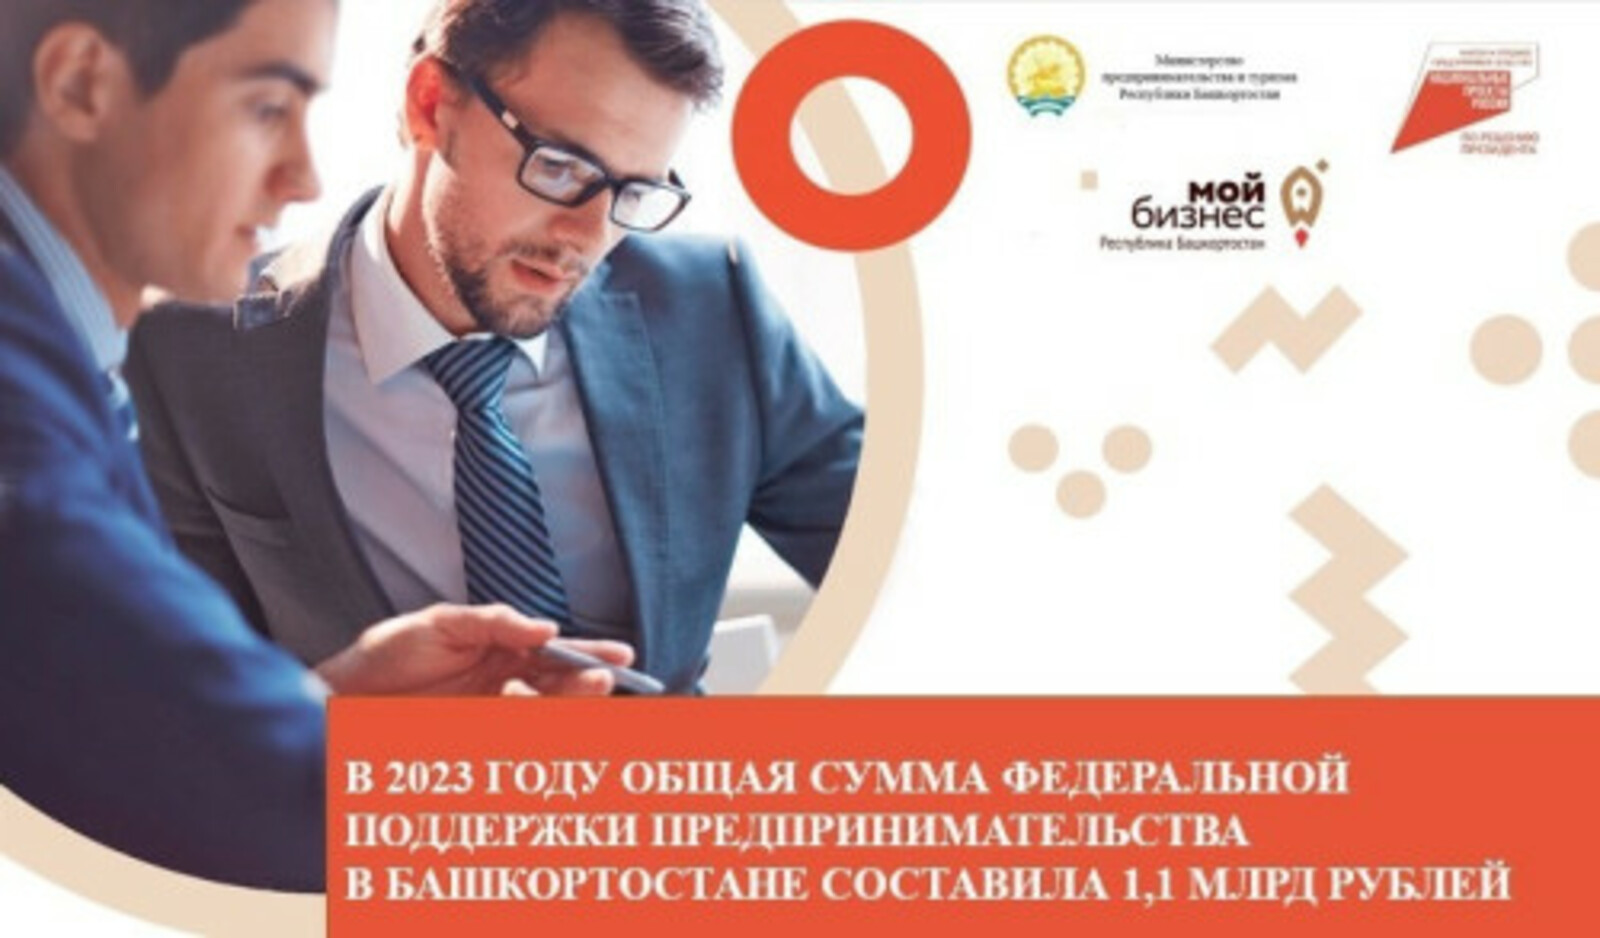 В 2023 году общая сумма федеральной поддержки предпринимательства в Башкортостане составила 1,1 млрд рублей